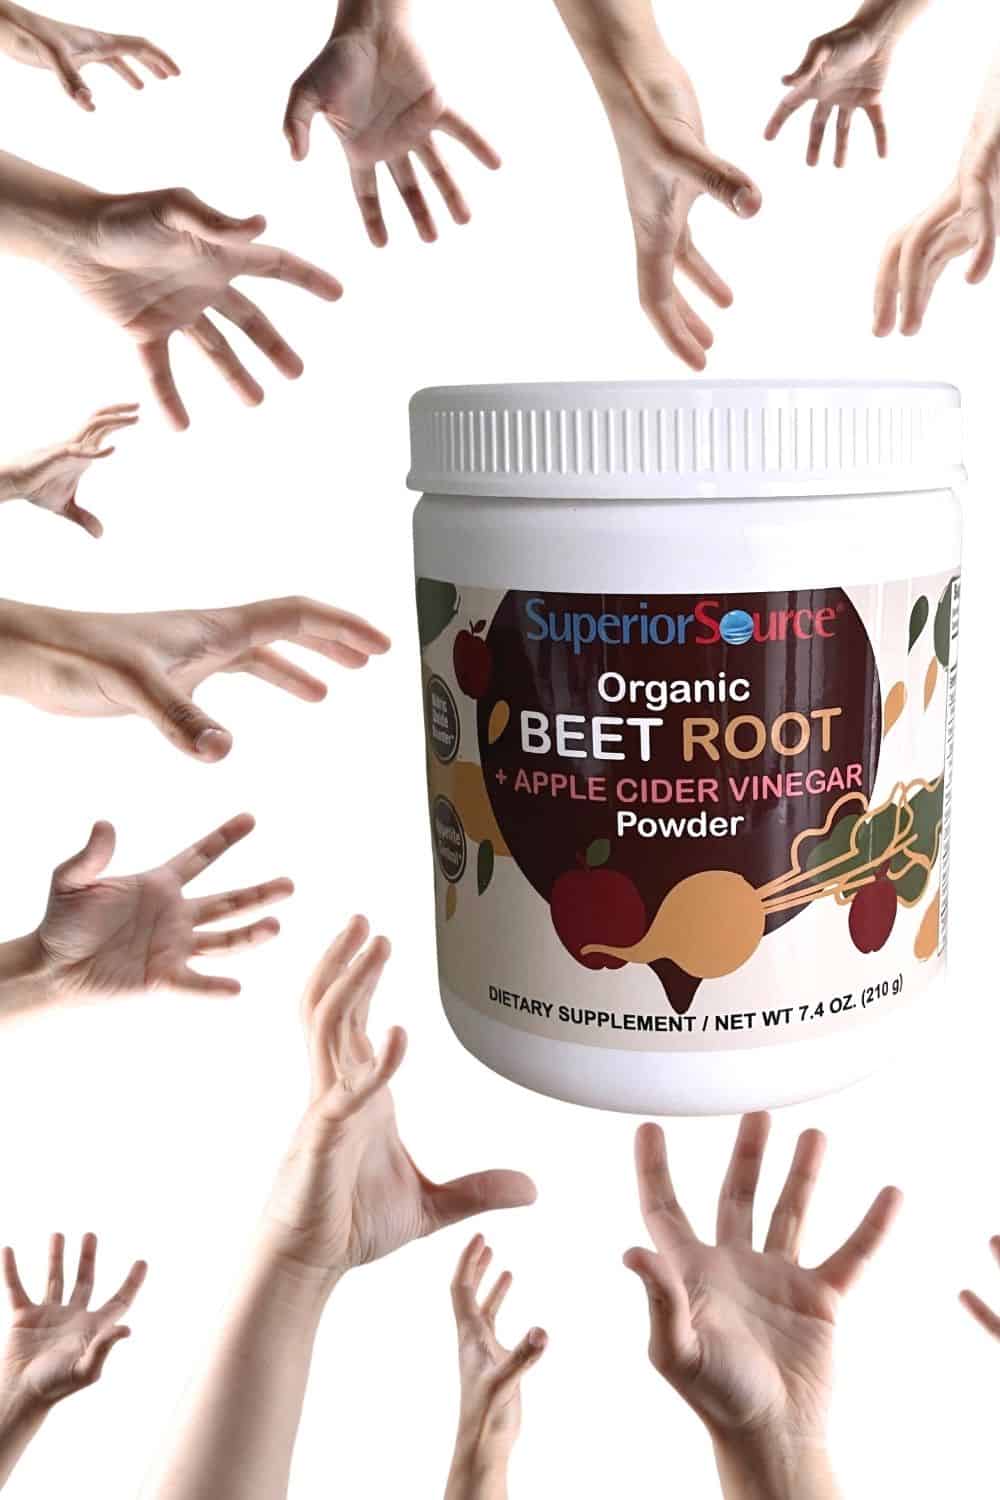 Organic Beet Root and ACV Powder hands grabbing it